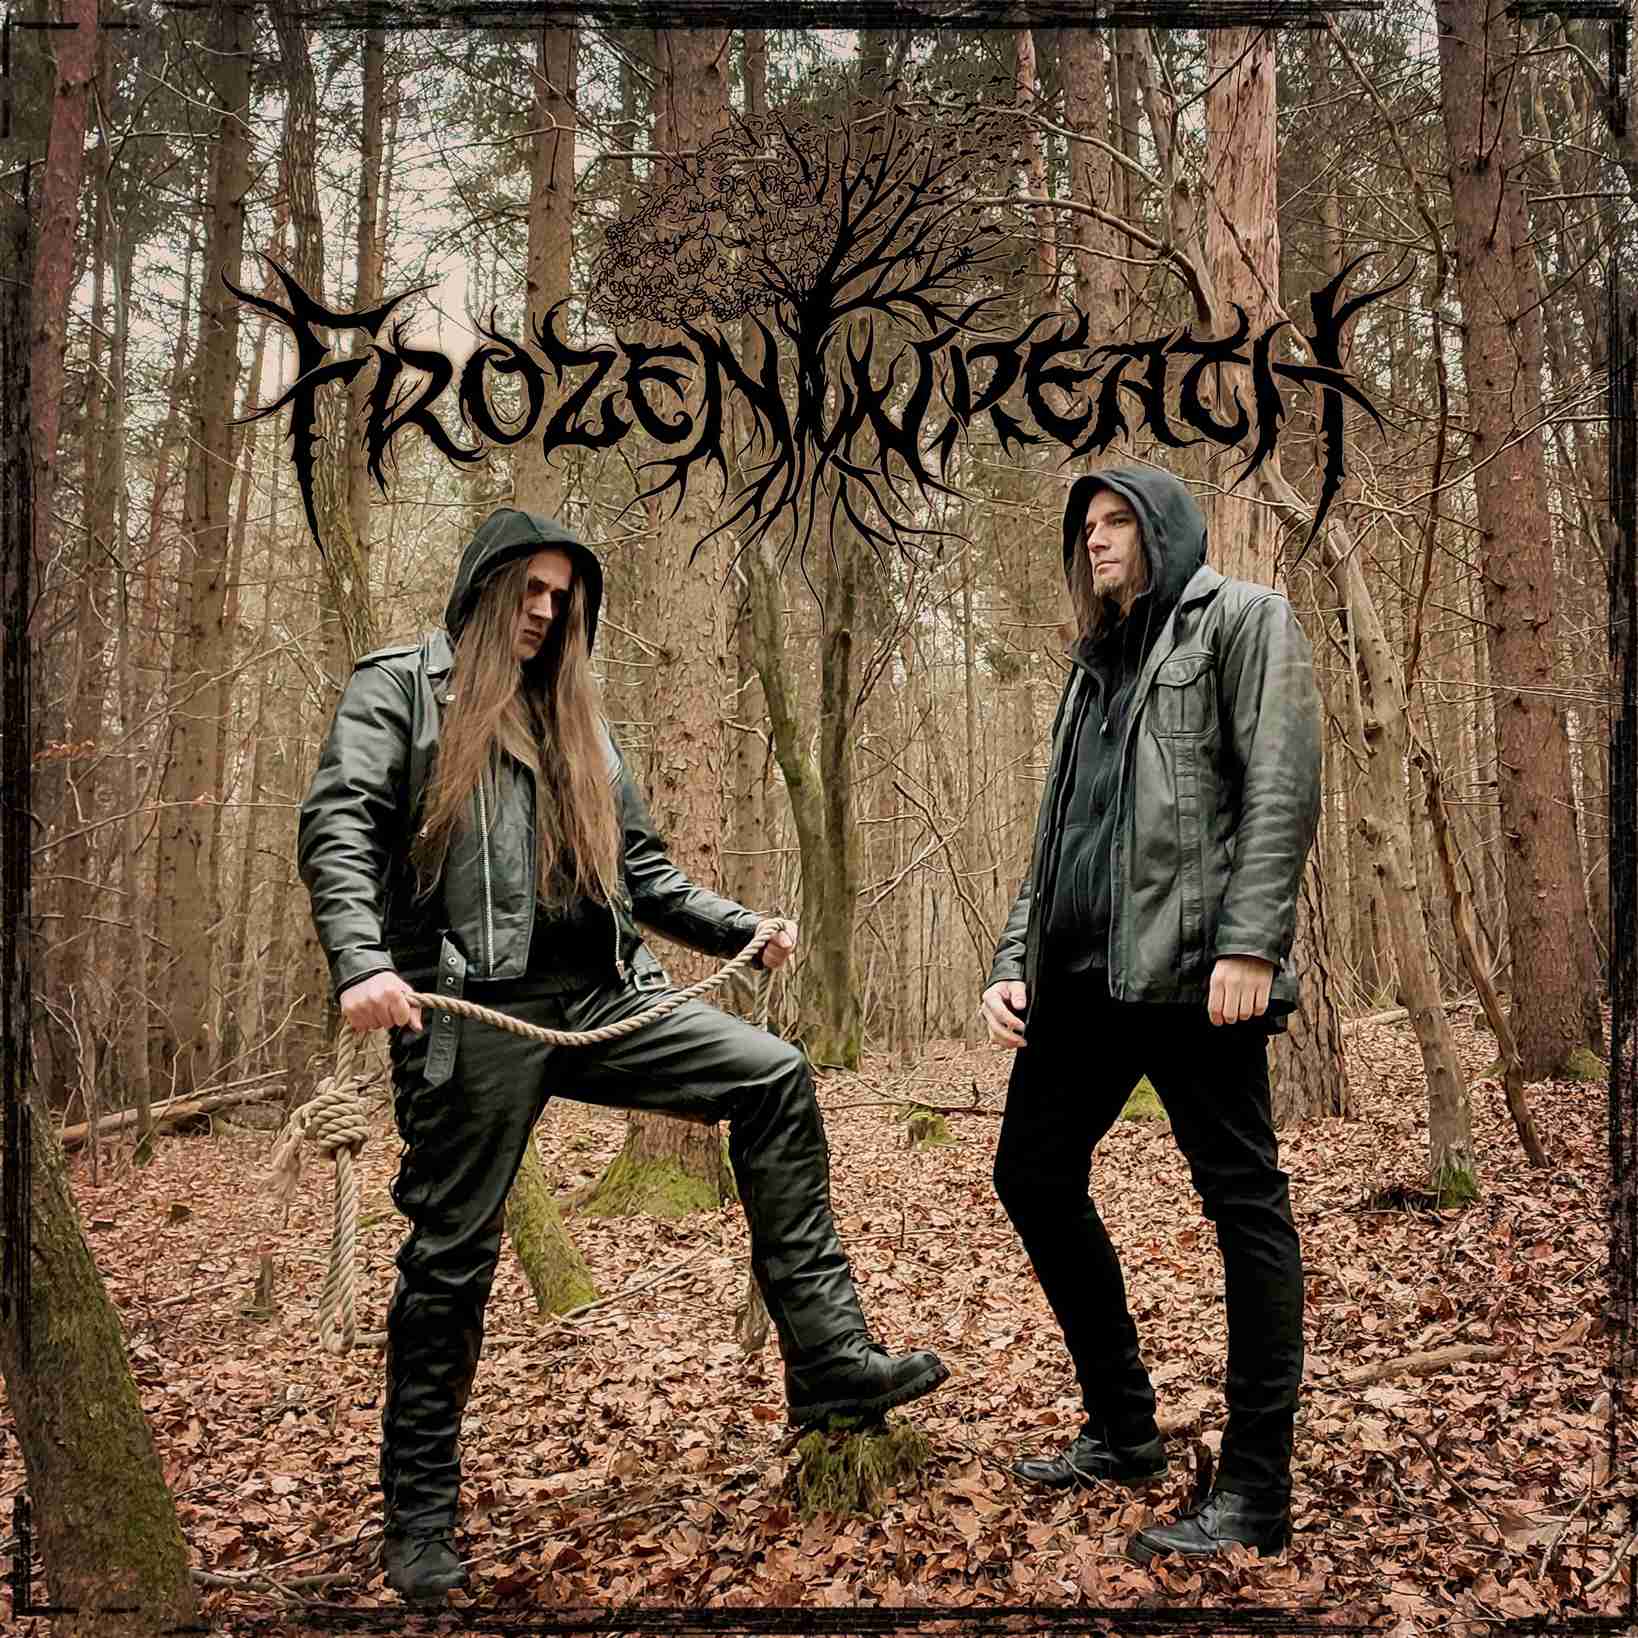 Frozen Wreath - 'Mea Culpa' címmel megjelent a hazai atmoszferikus black metal zenekar második nagylemeze!